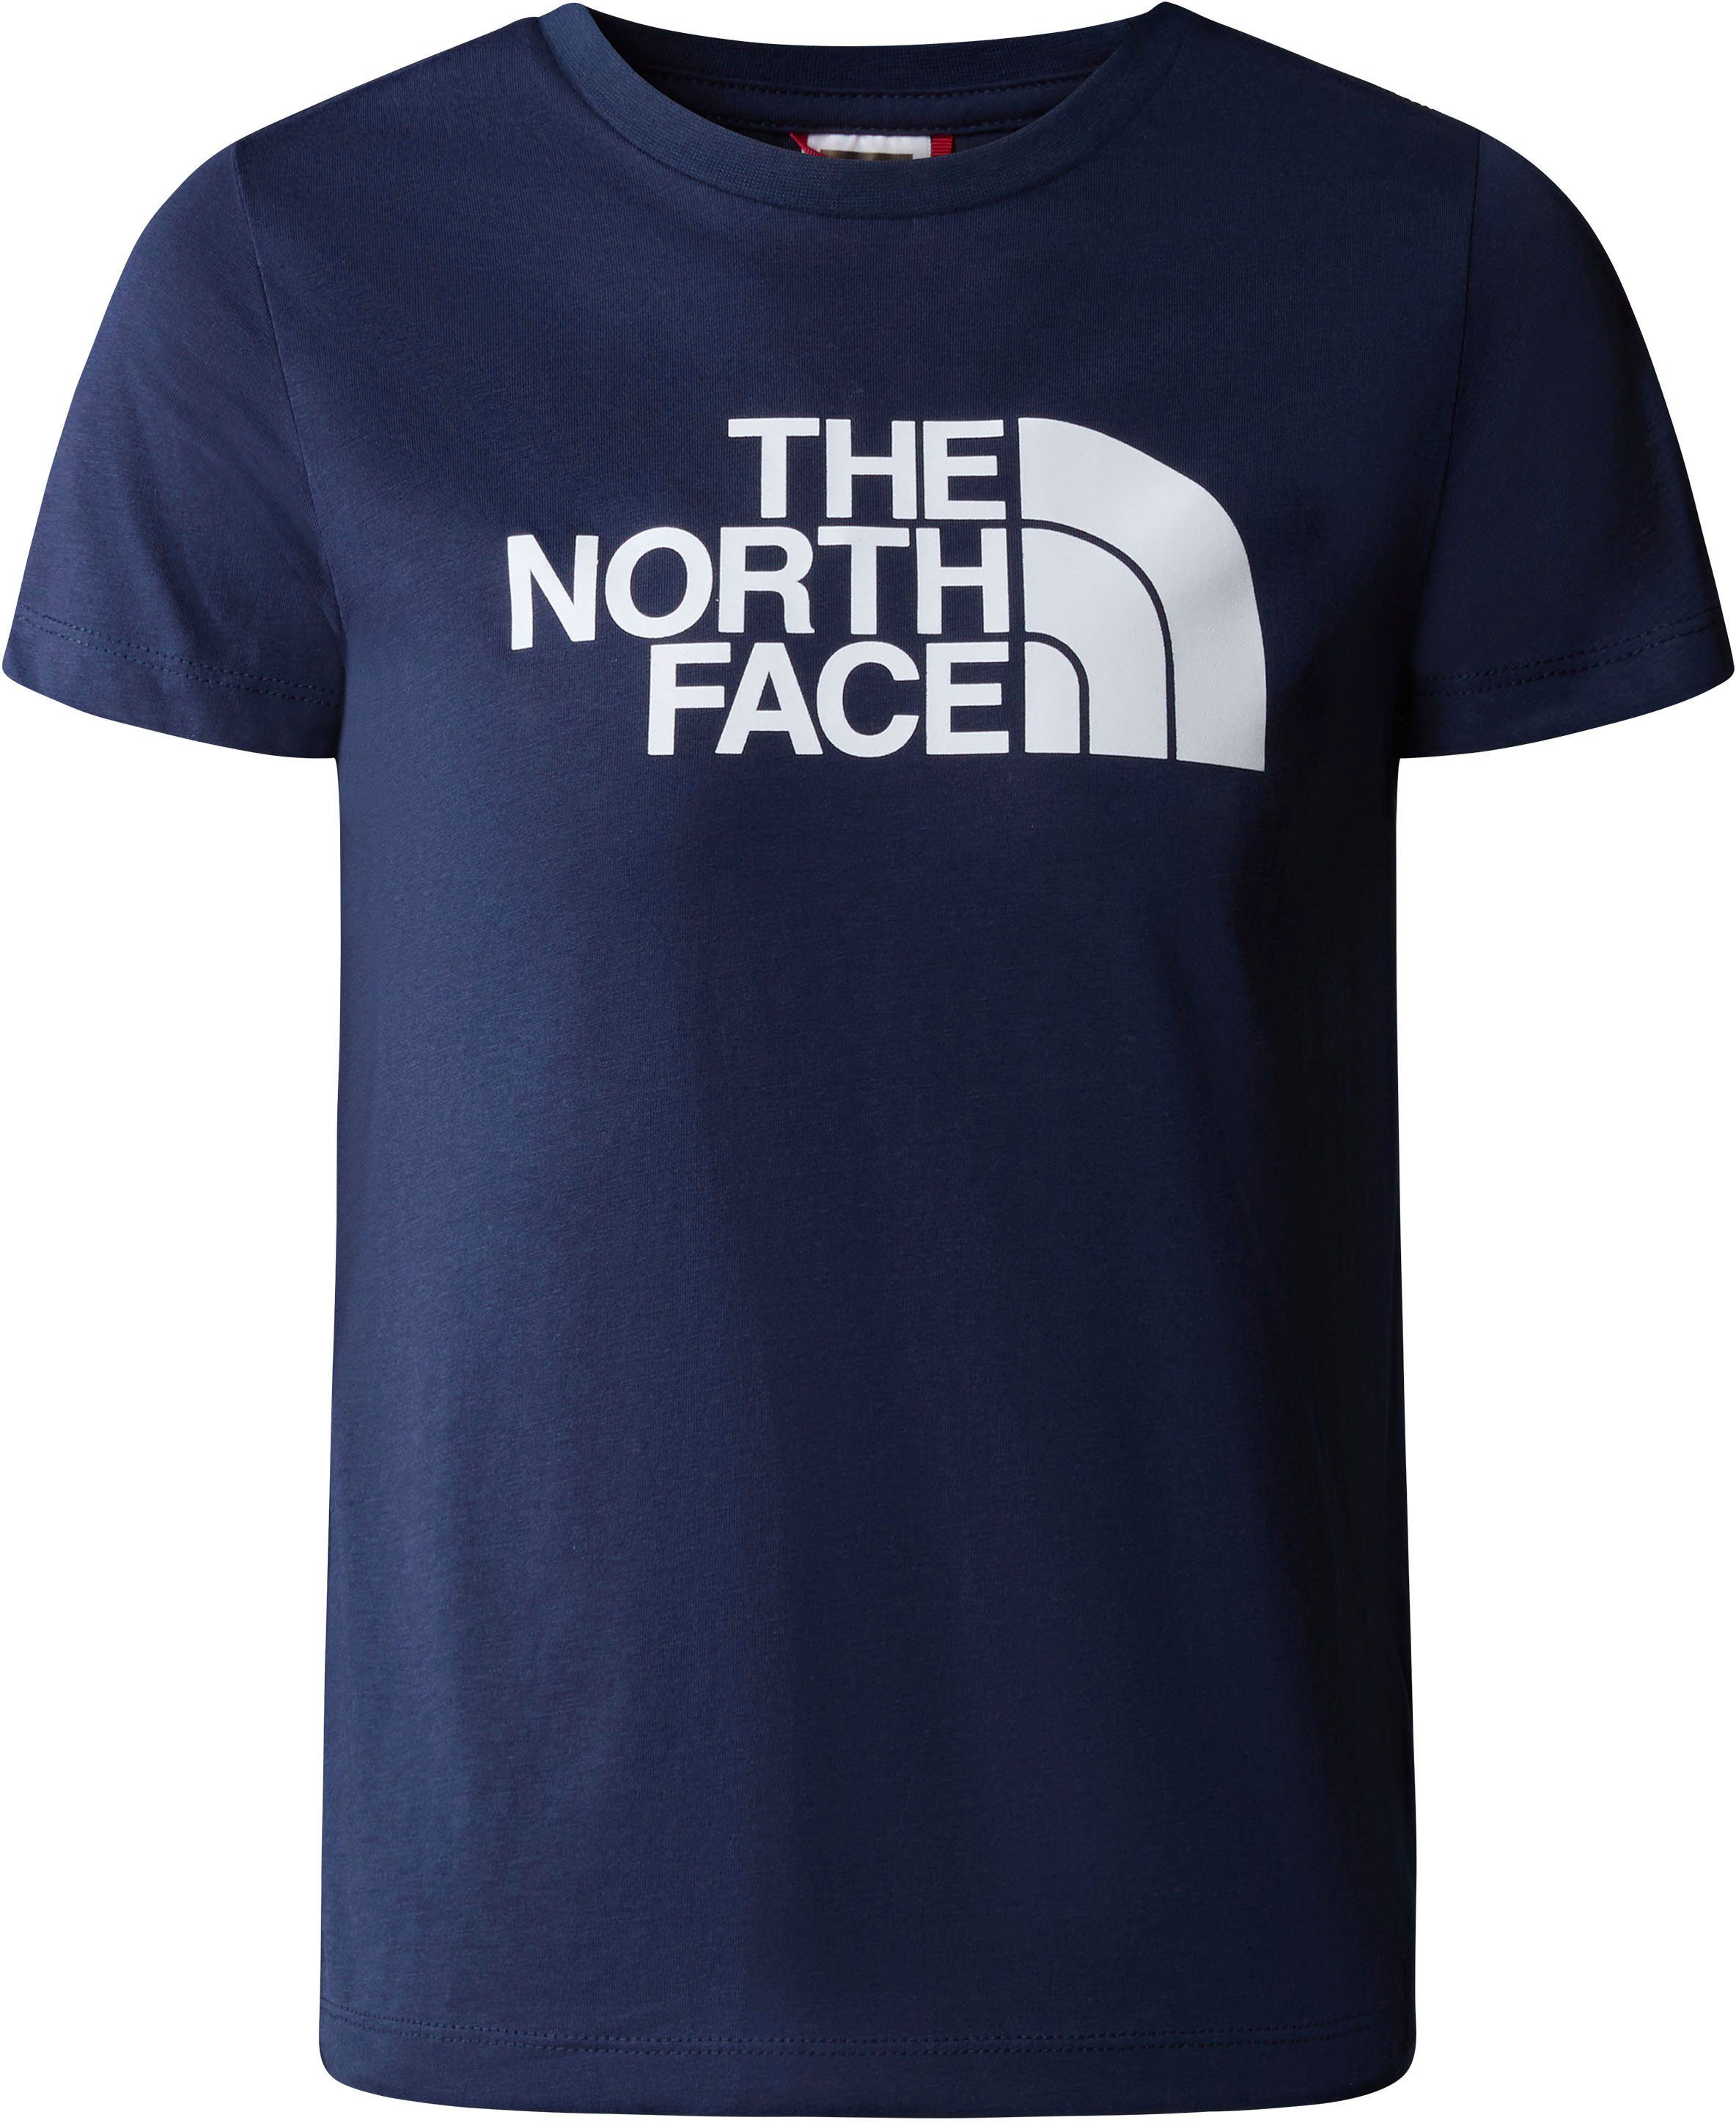 EASY für TEE navy The North Kinder - summit T-Shirt Face